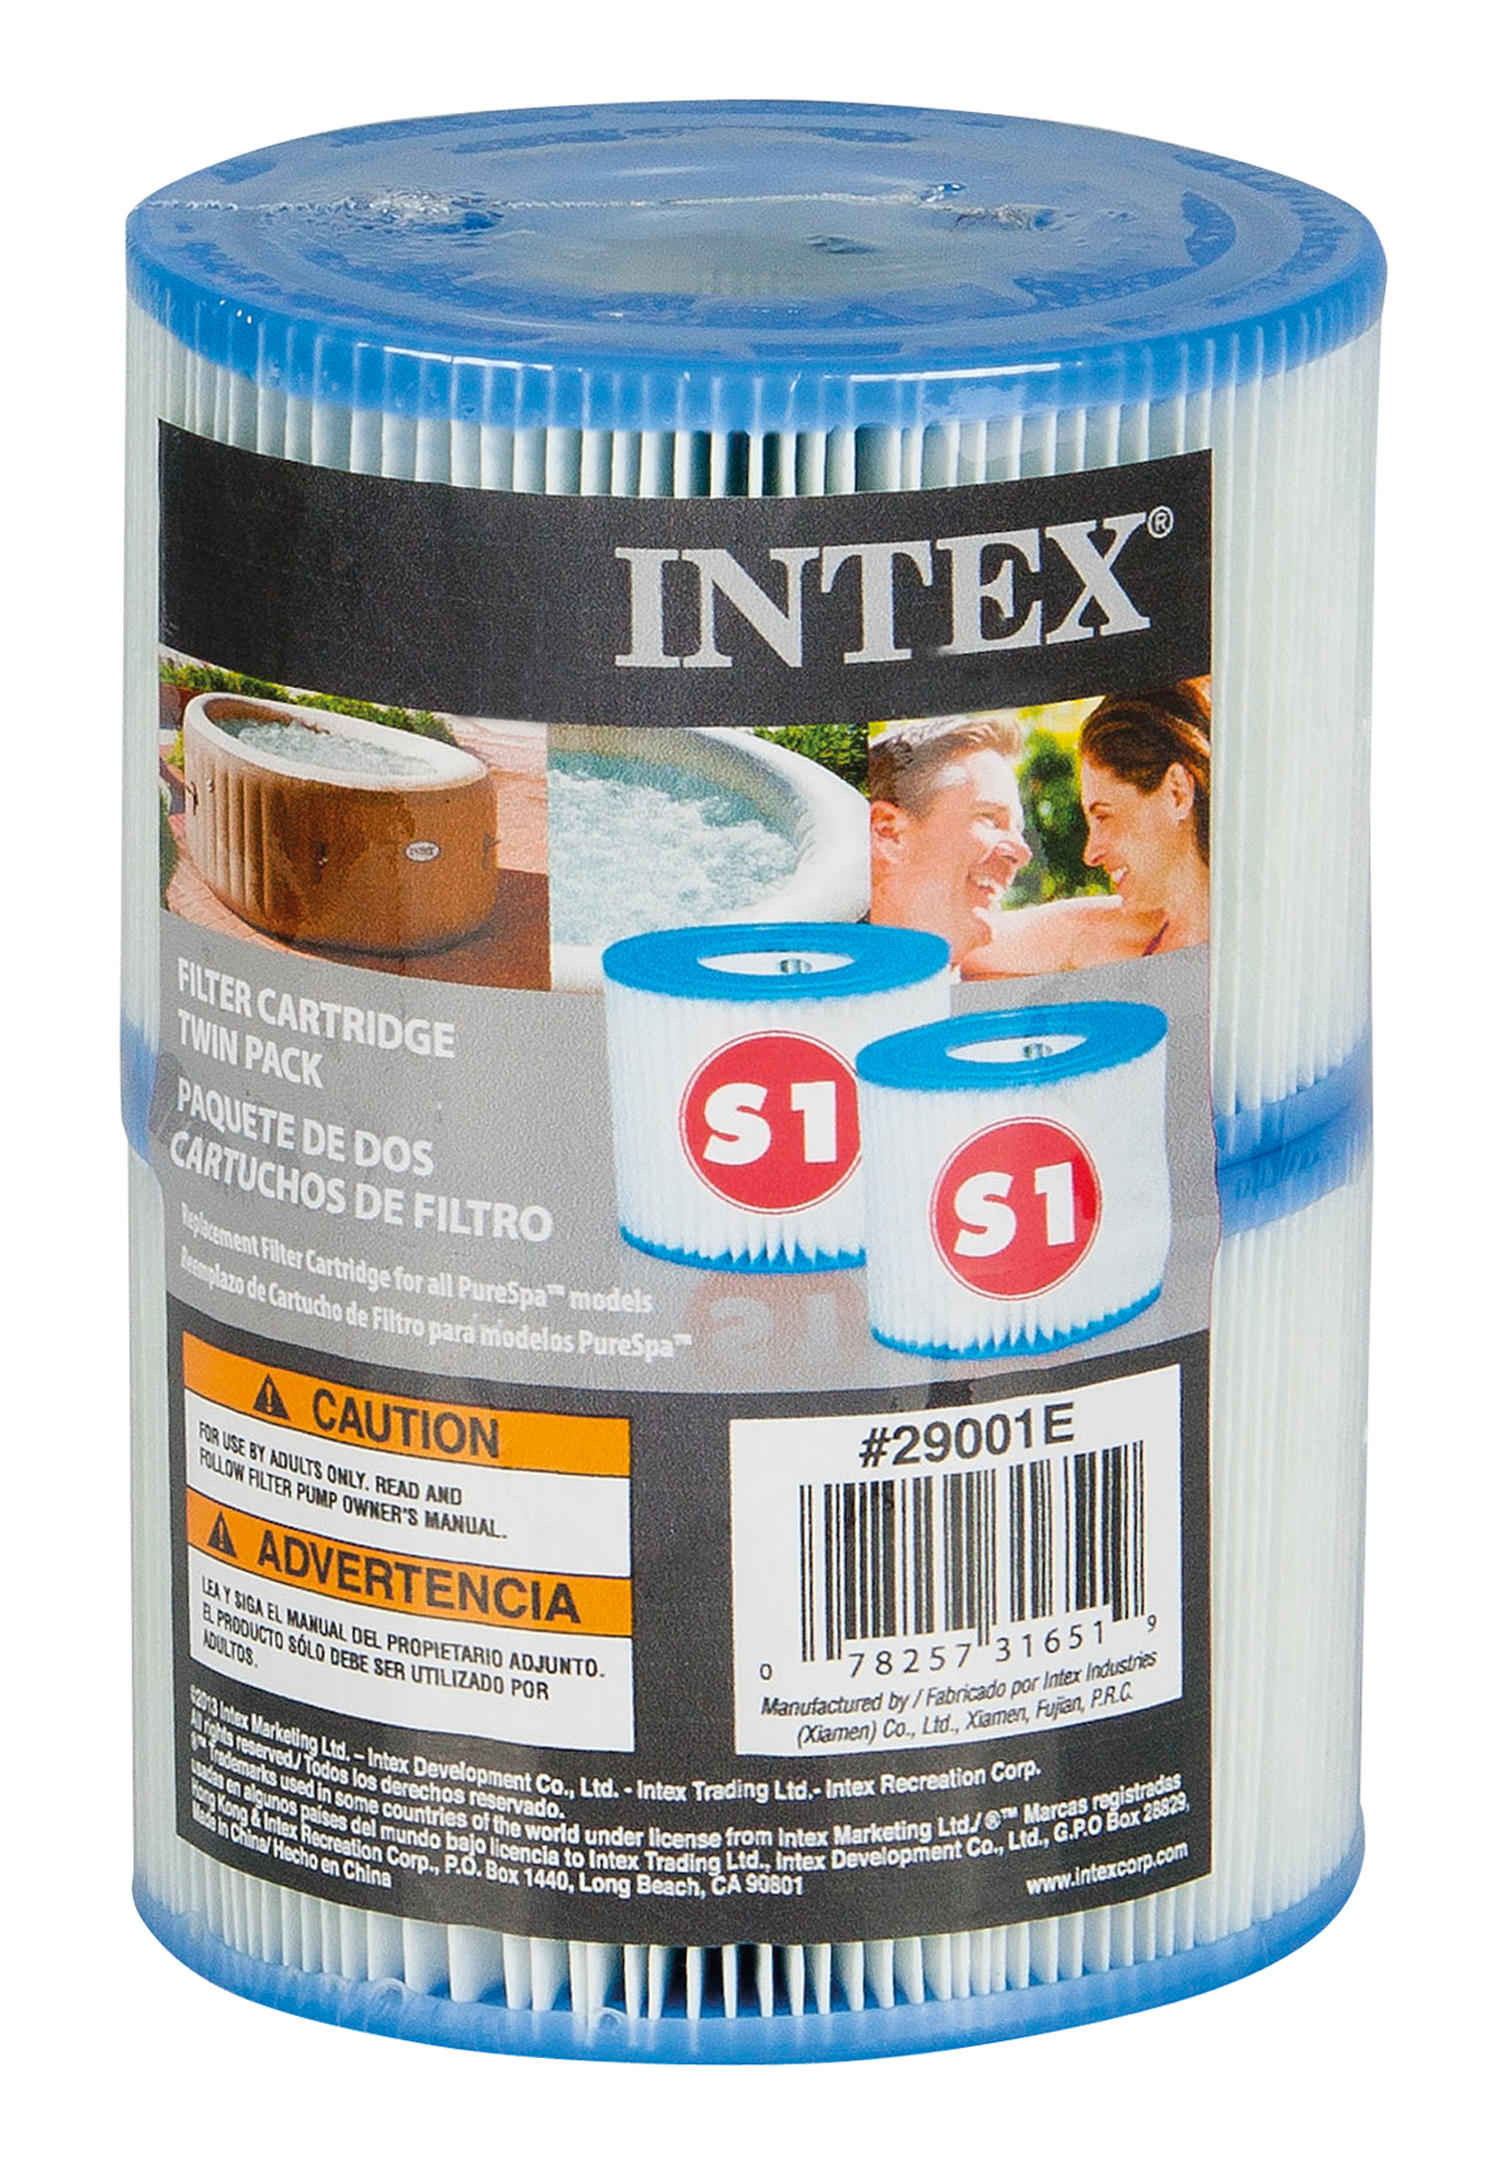 Intex 29001 Spa Filter patronen S1 2 stuks